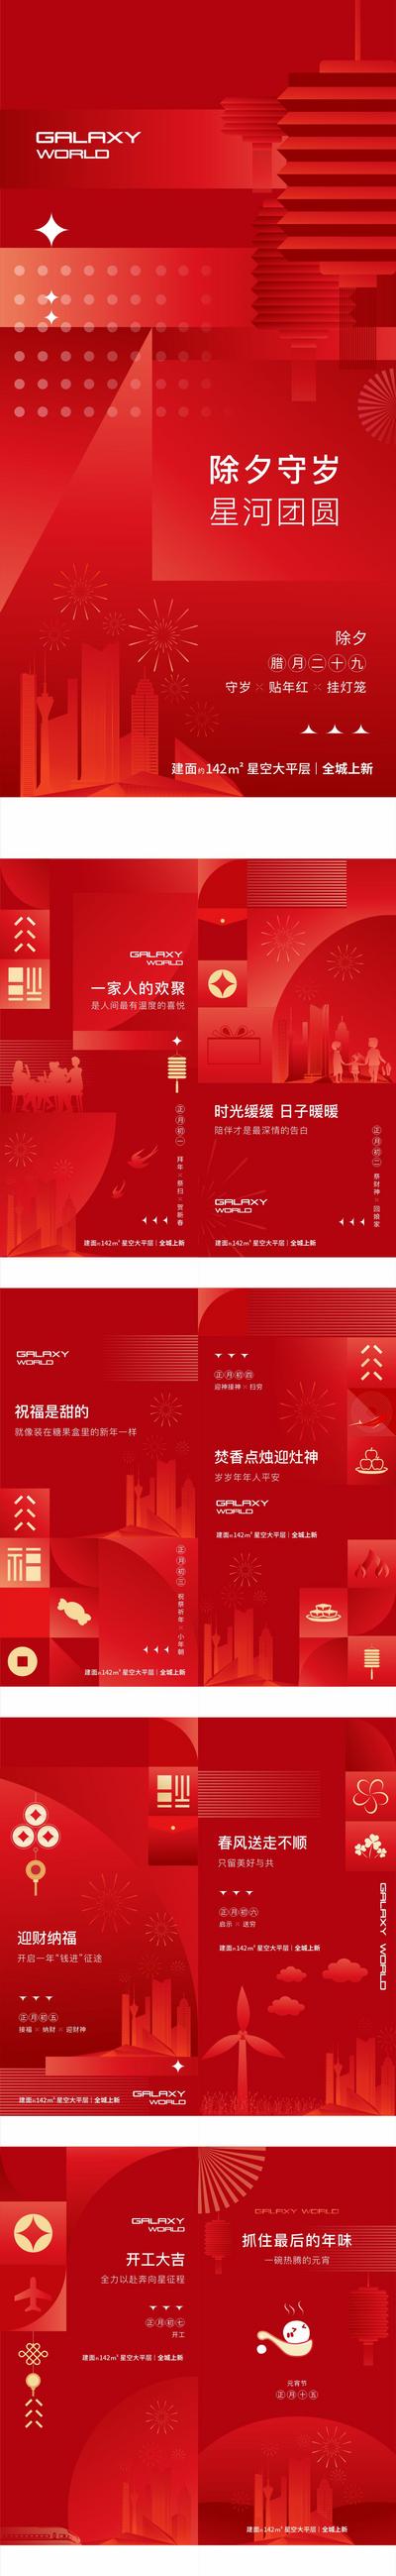 南门网 海报 地产 中国传统节日 初一 初七 元宵节 年俗 创意